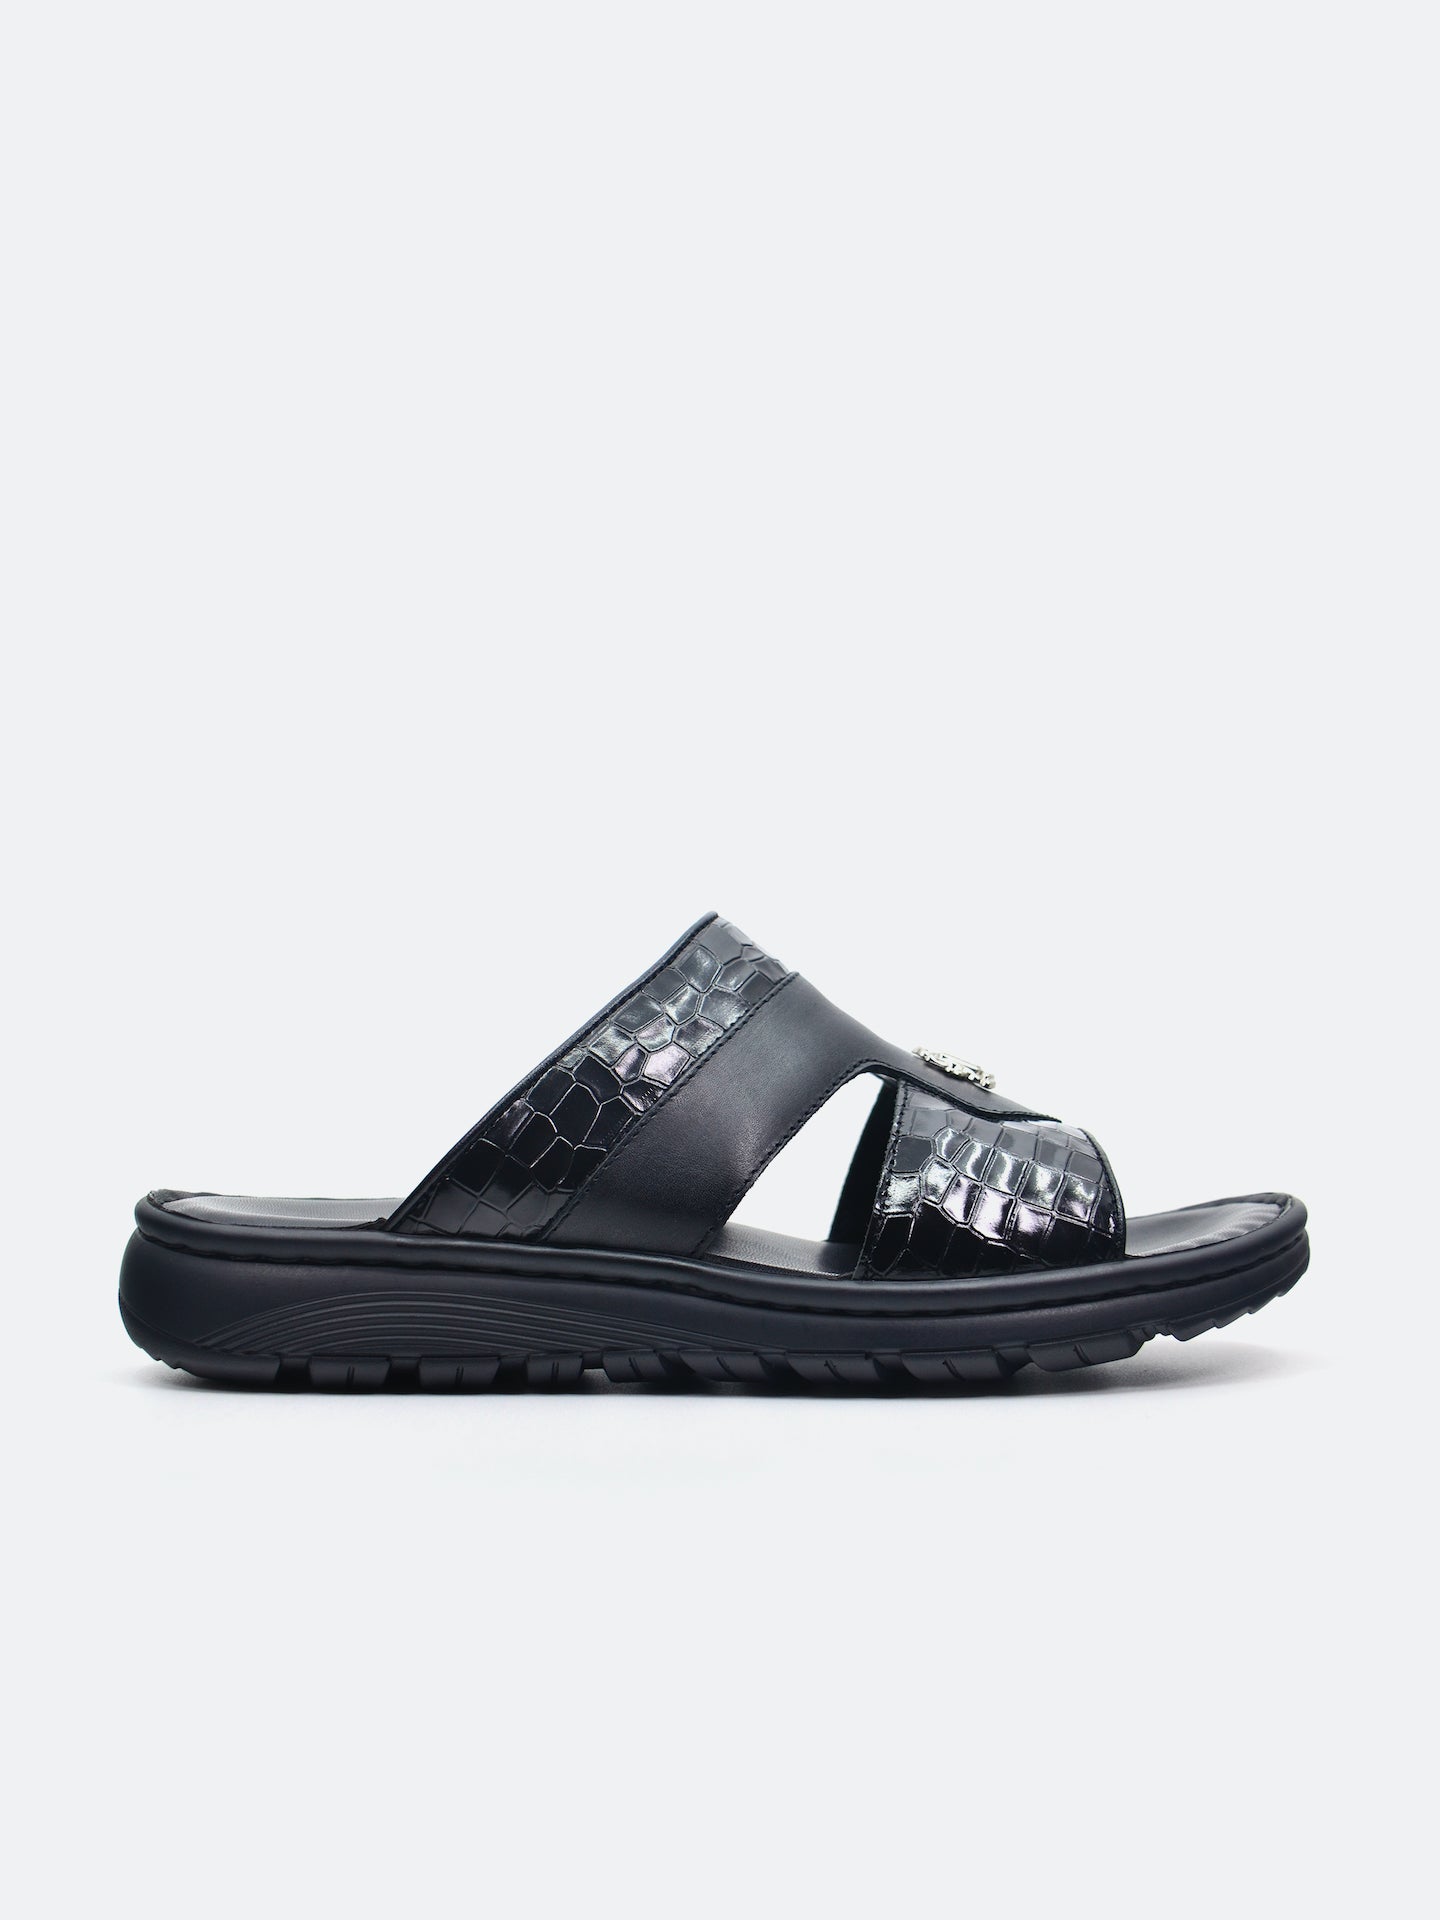 Barjeel Uno 29550-3 Men's Arabic Sandals #color_Black